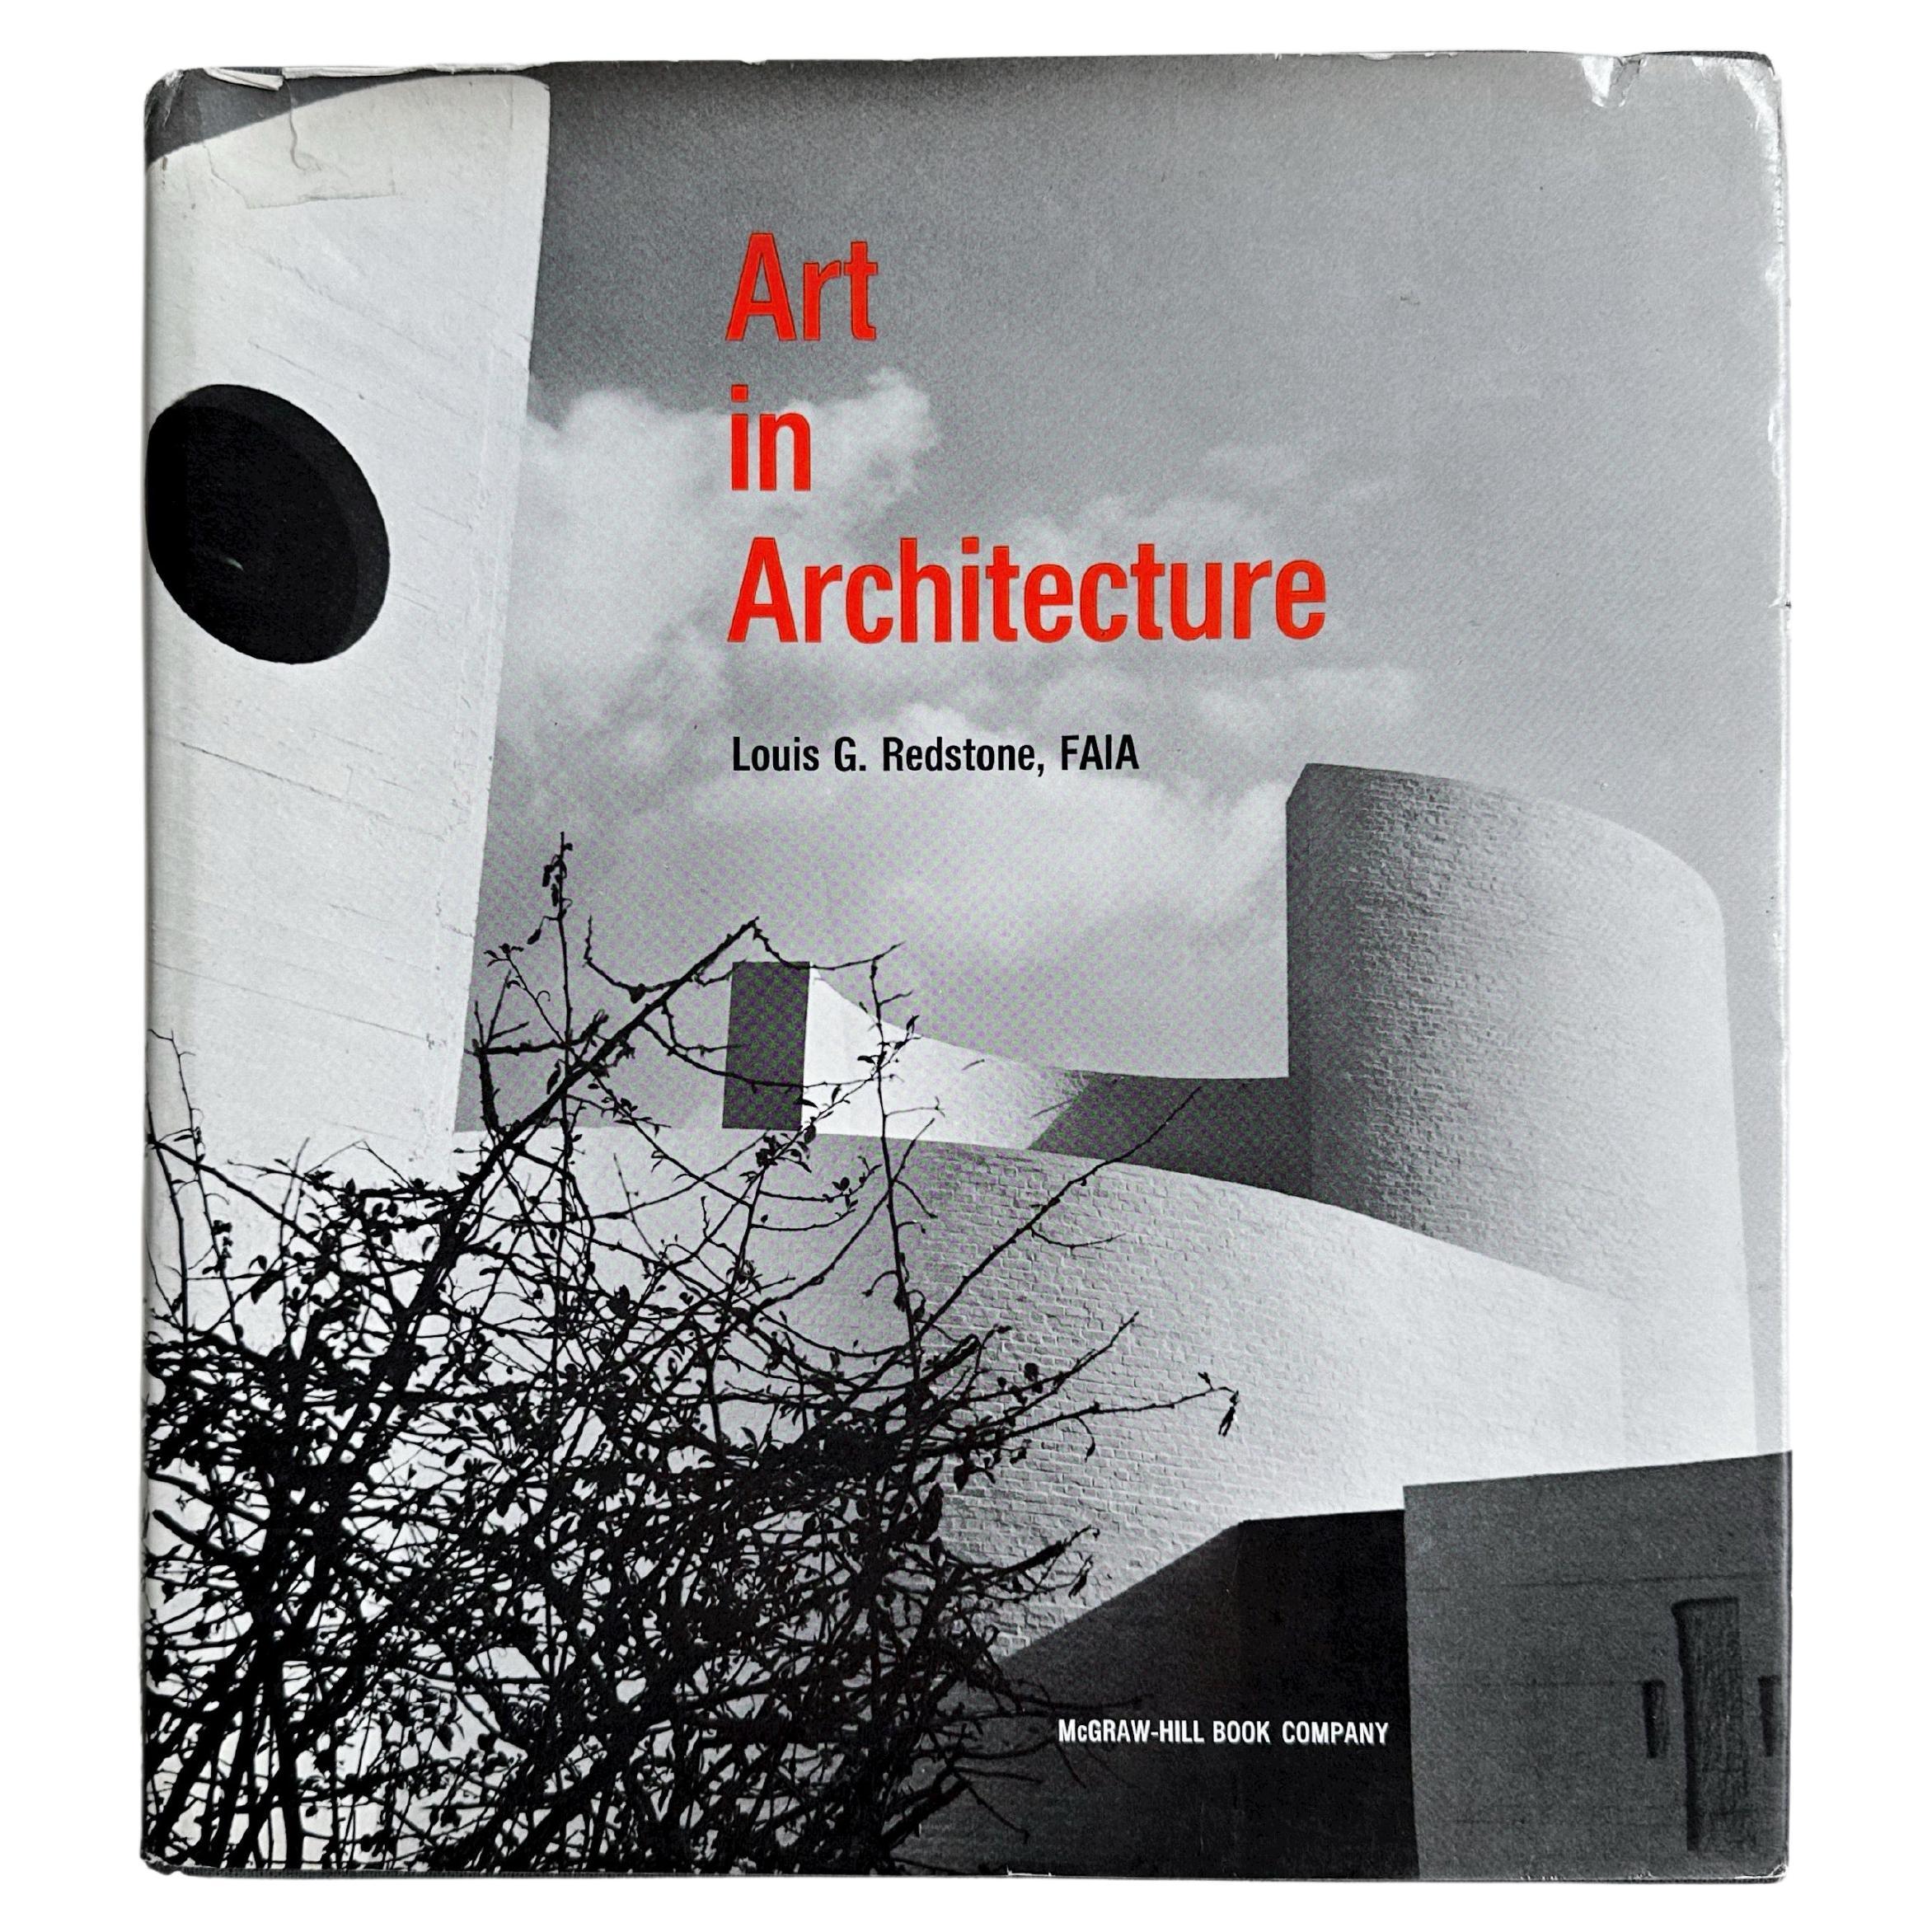 Kunst in Architektur, Redstone, 1968